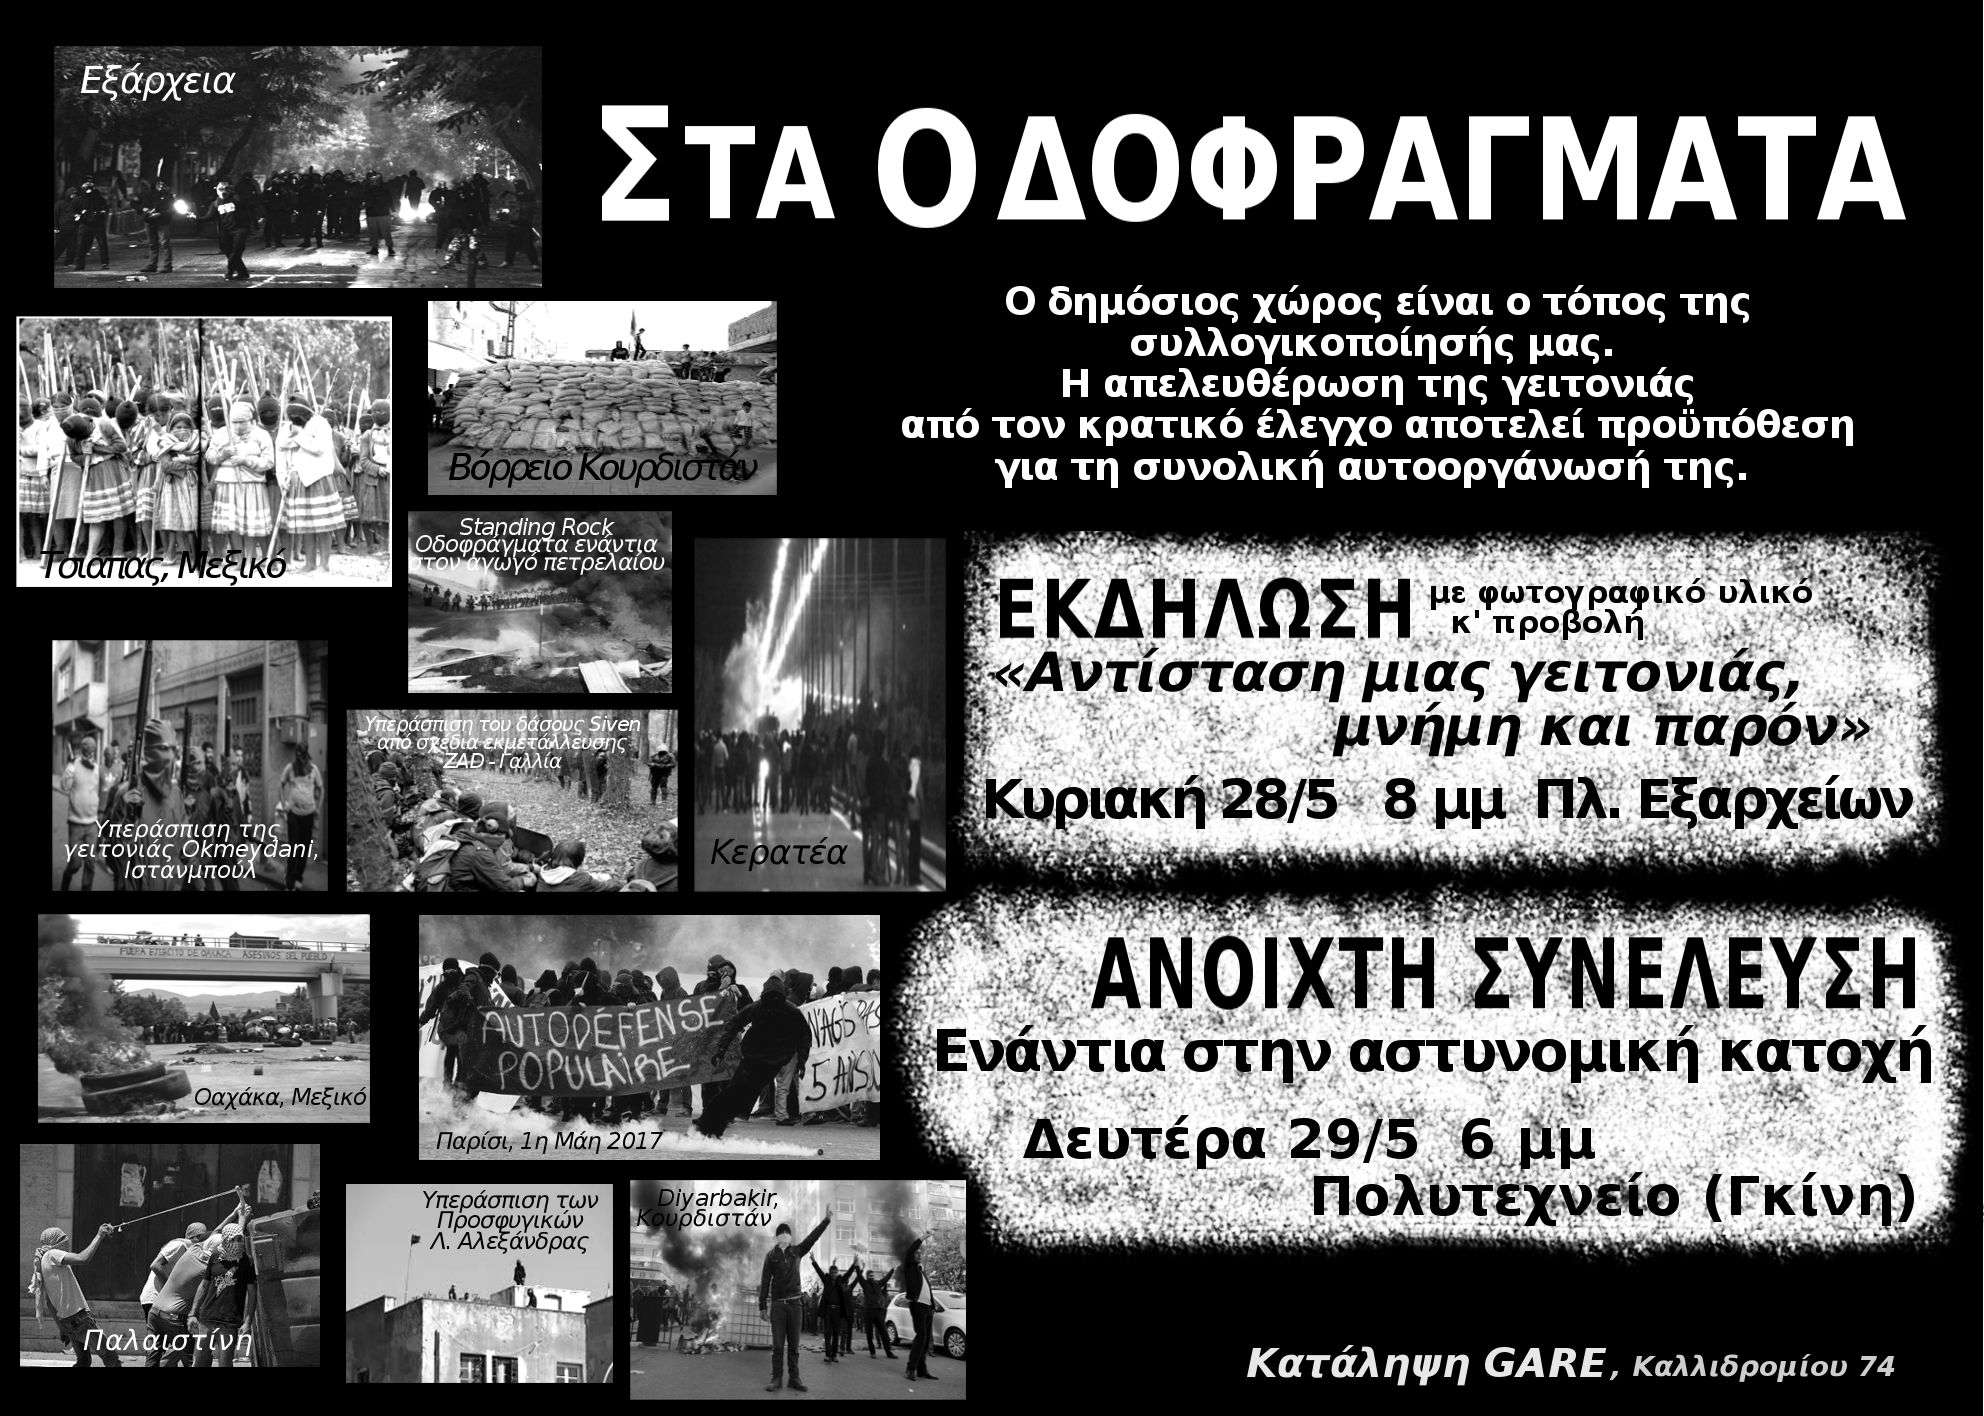 Αθήνα: Εκδήλωση και συνέλευση ενάντια στην αστυνομική κατοχή στα Εξάρχεια